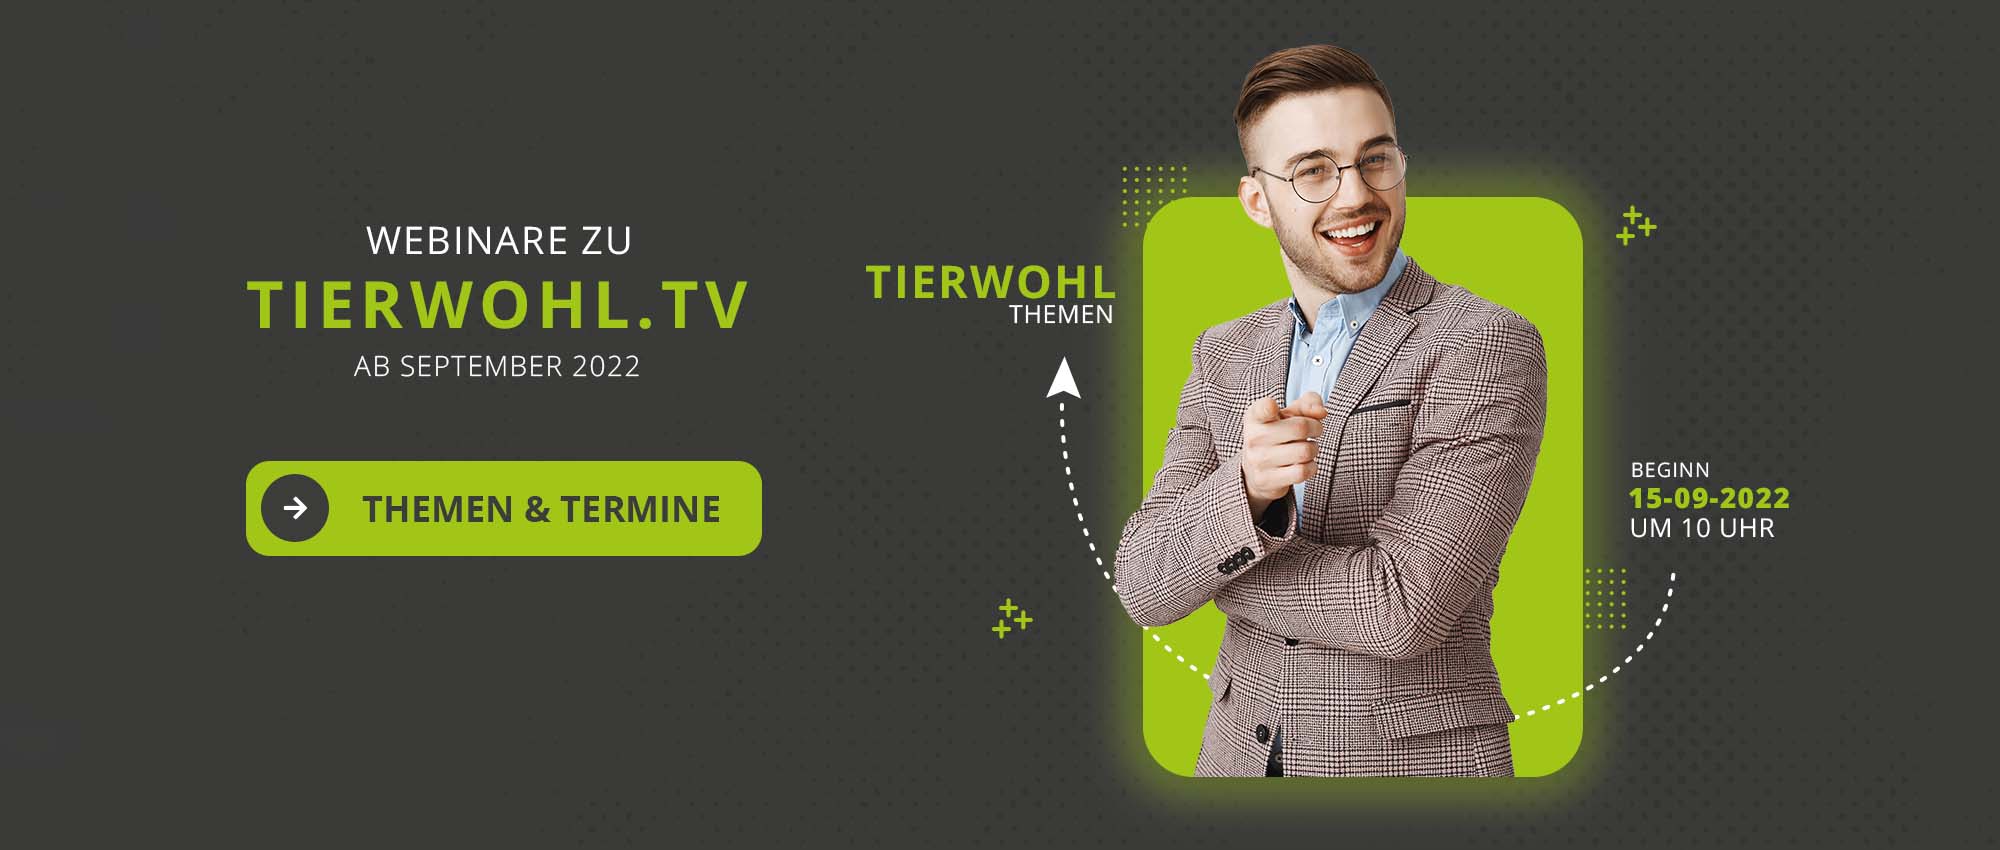 Webinare tierwohl.tv